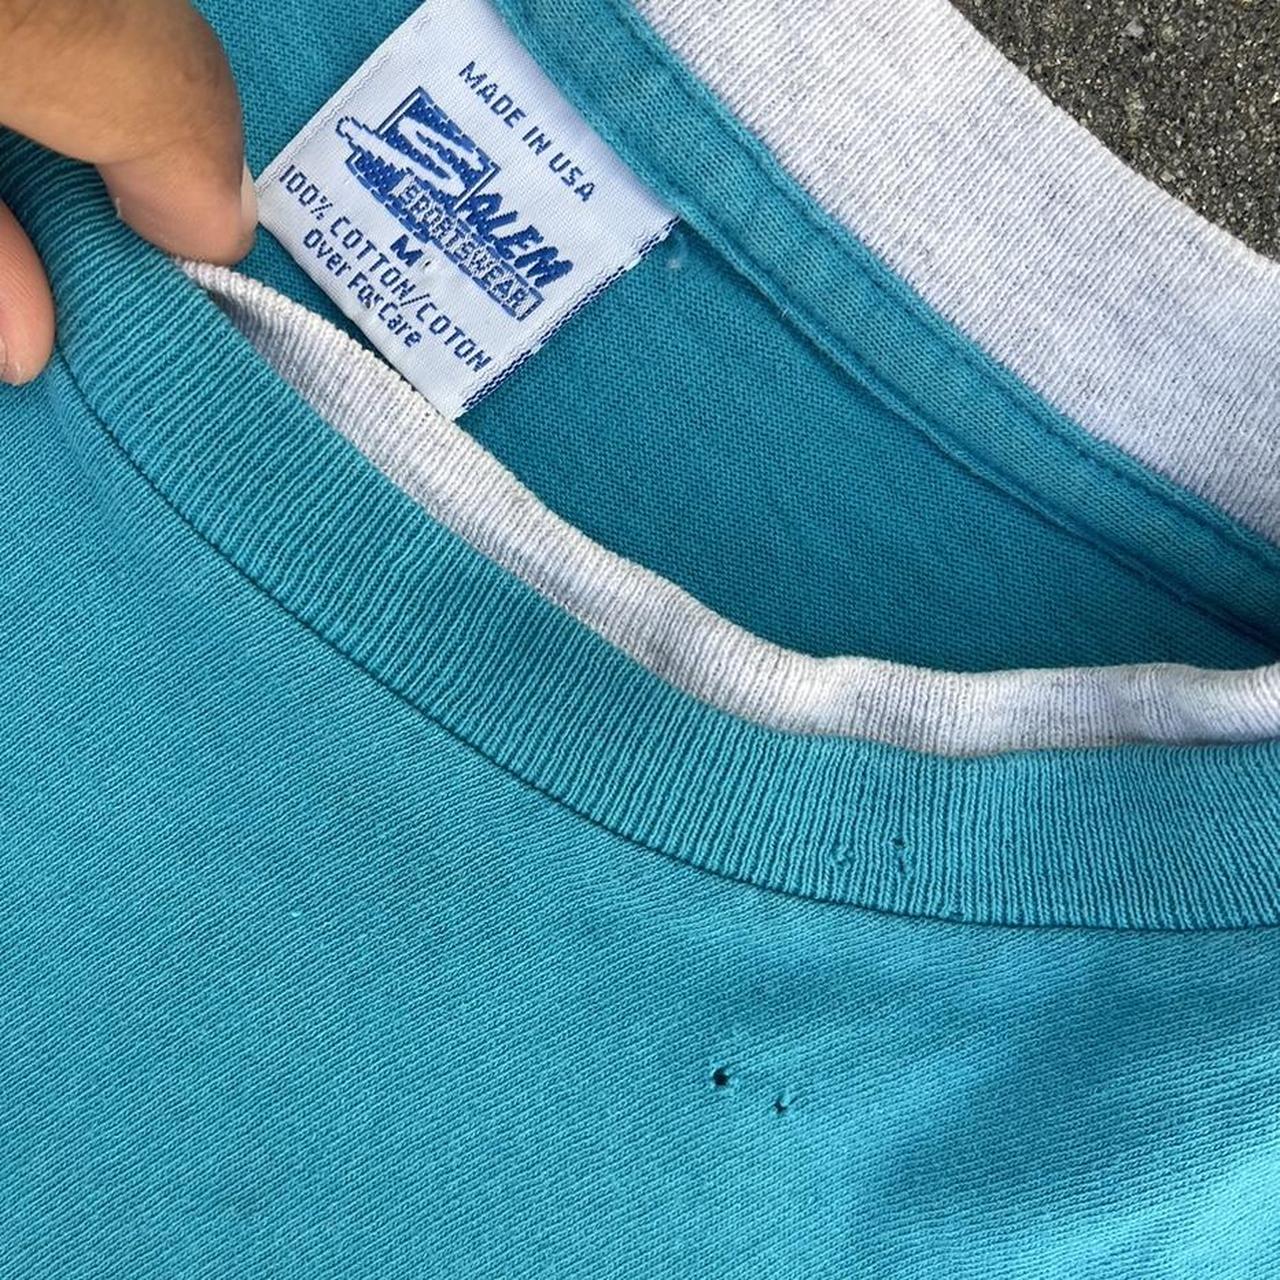 Charlotte Hornets vintage t shirt Size: - Depop